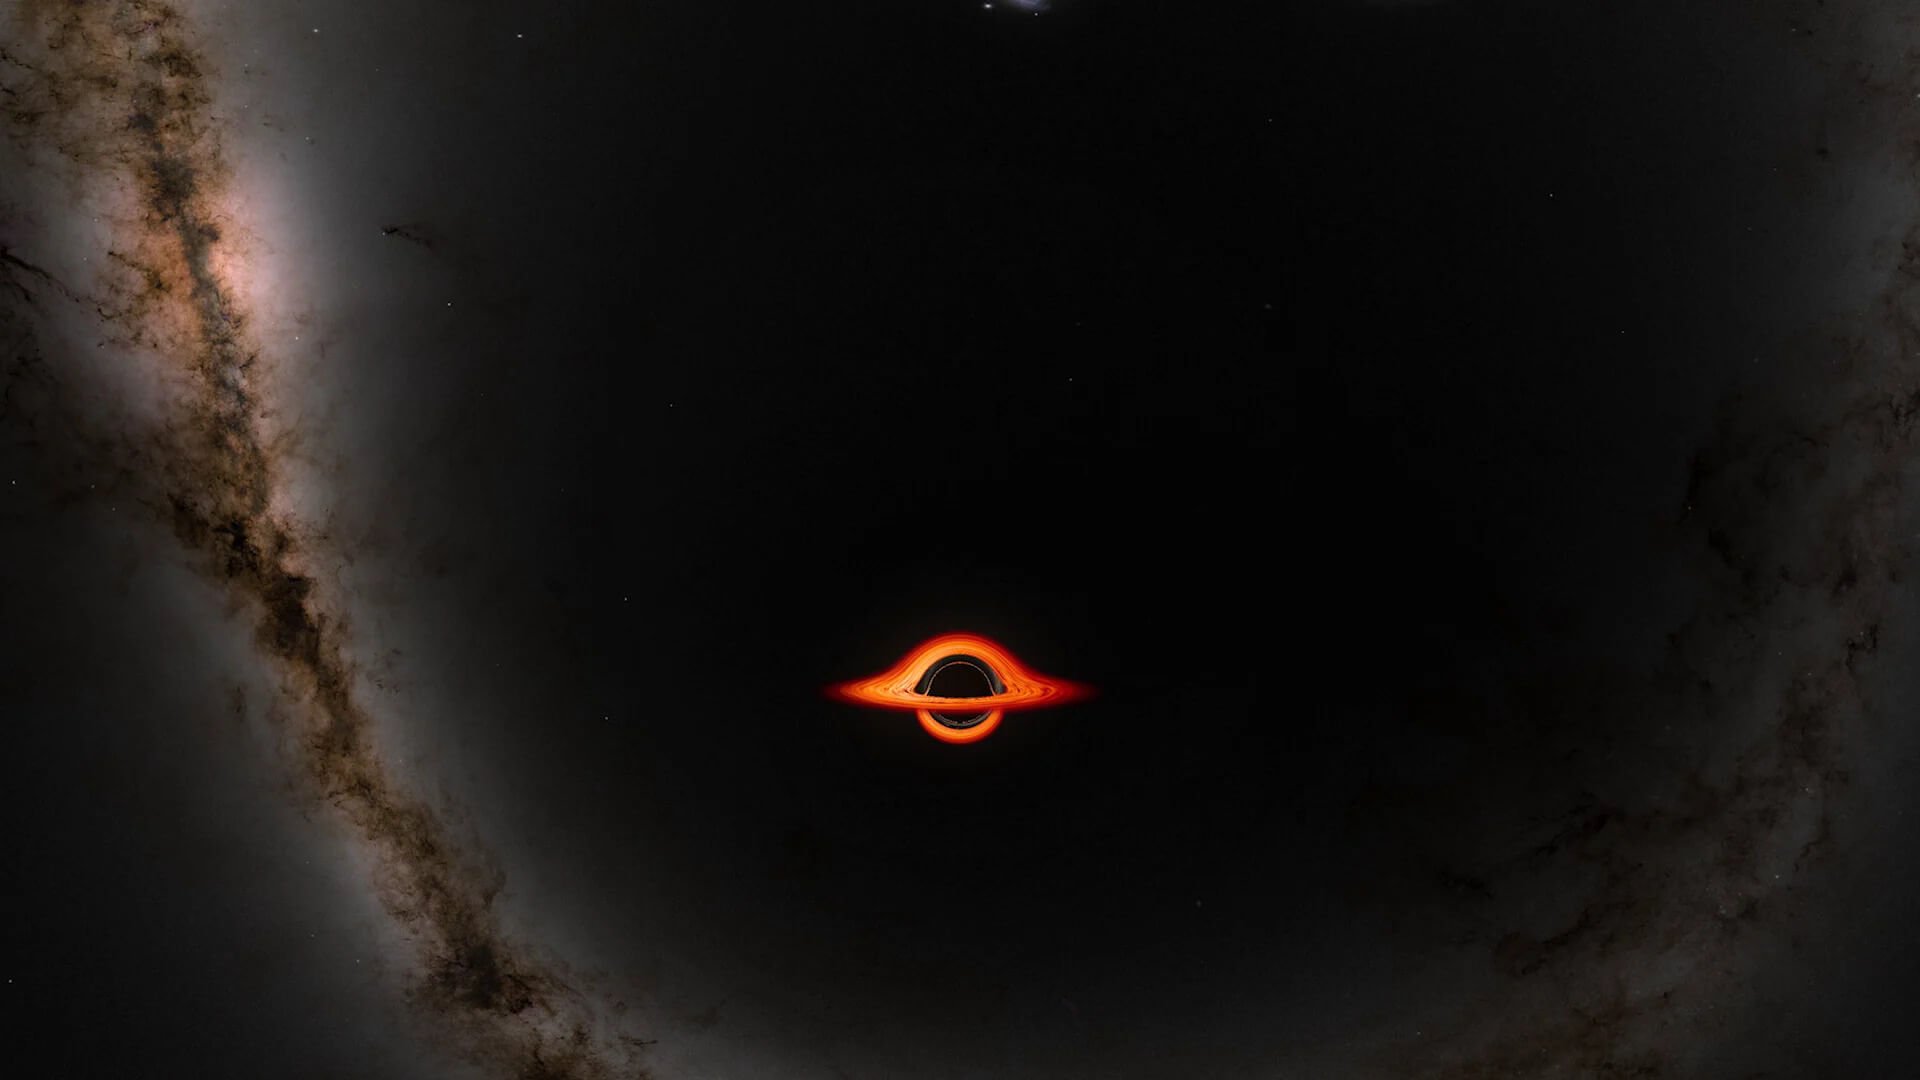 Космическая лаборатория. Масса сверхмассивных черных дыр превышает массу Солнца в миллионы и миллиарды раз. изображение: Nasa.com. Фото.